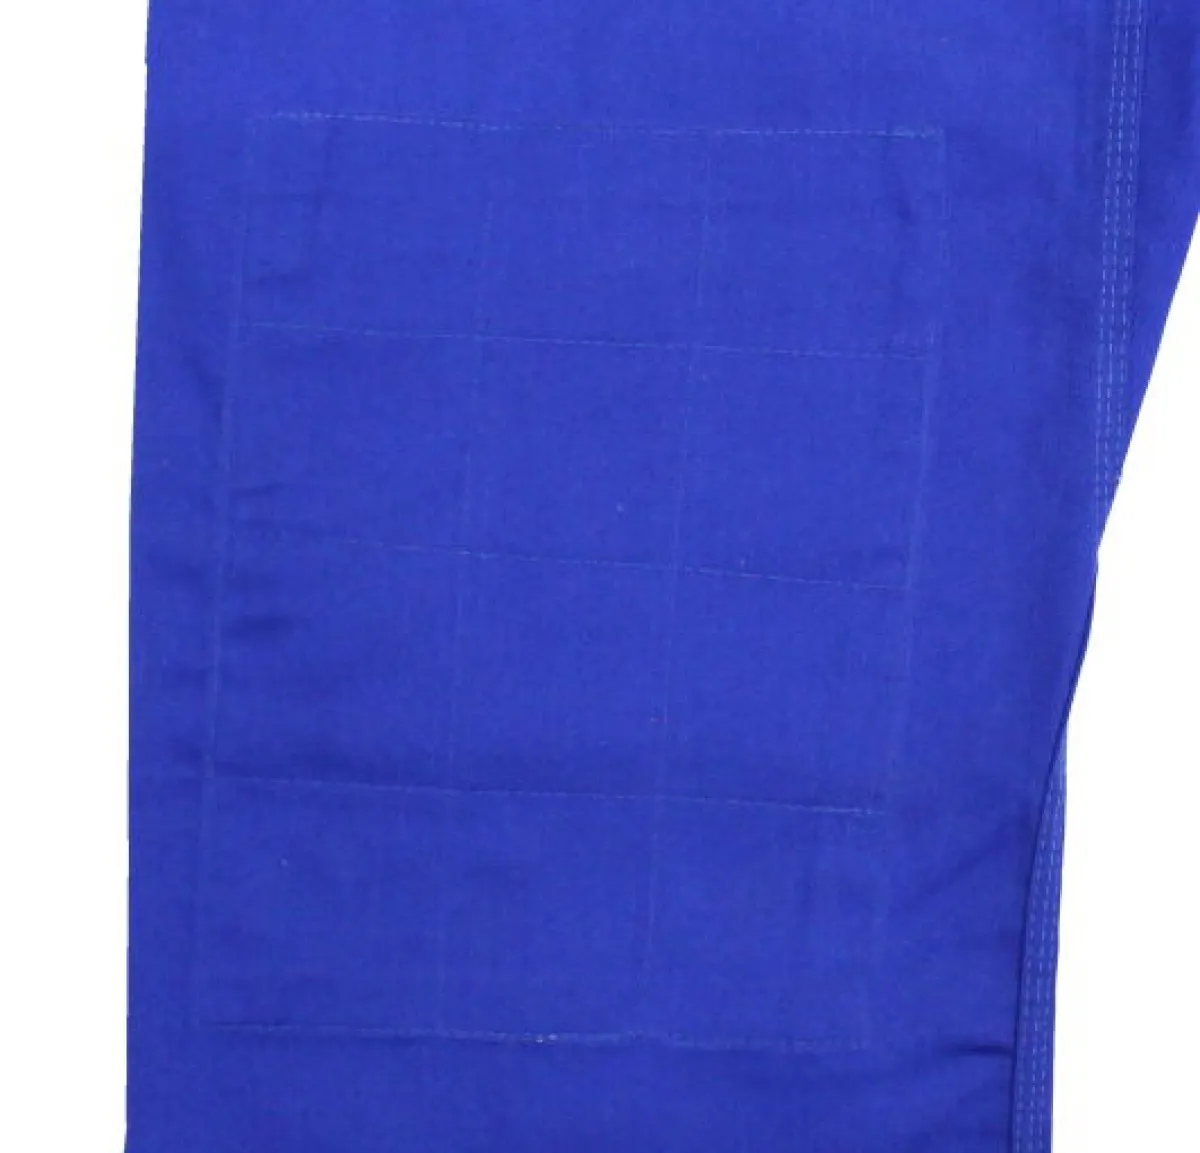 pantalón de Judo azul